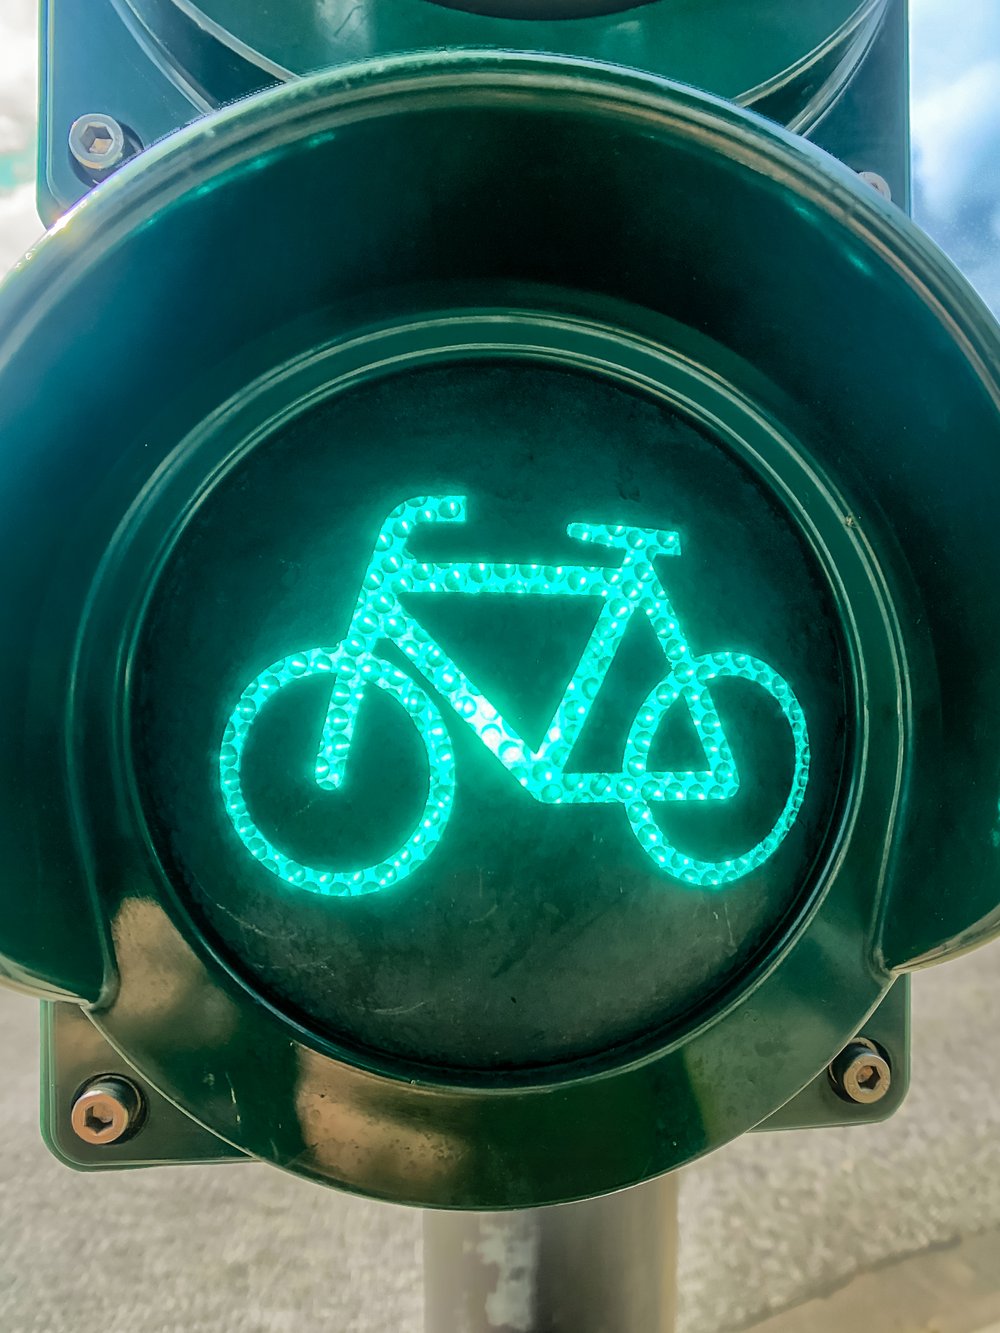 Grüne Welle“ für Hamburgs Radfahrer